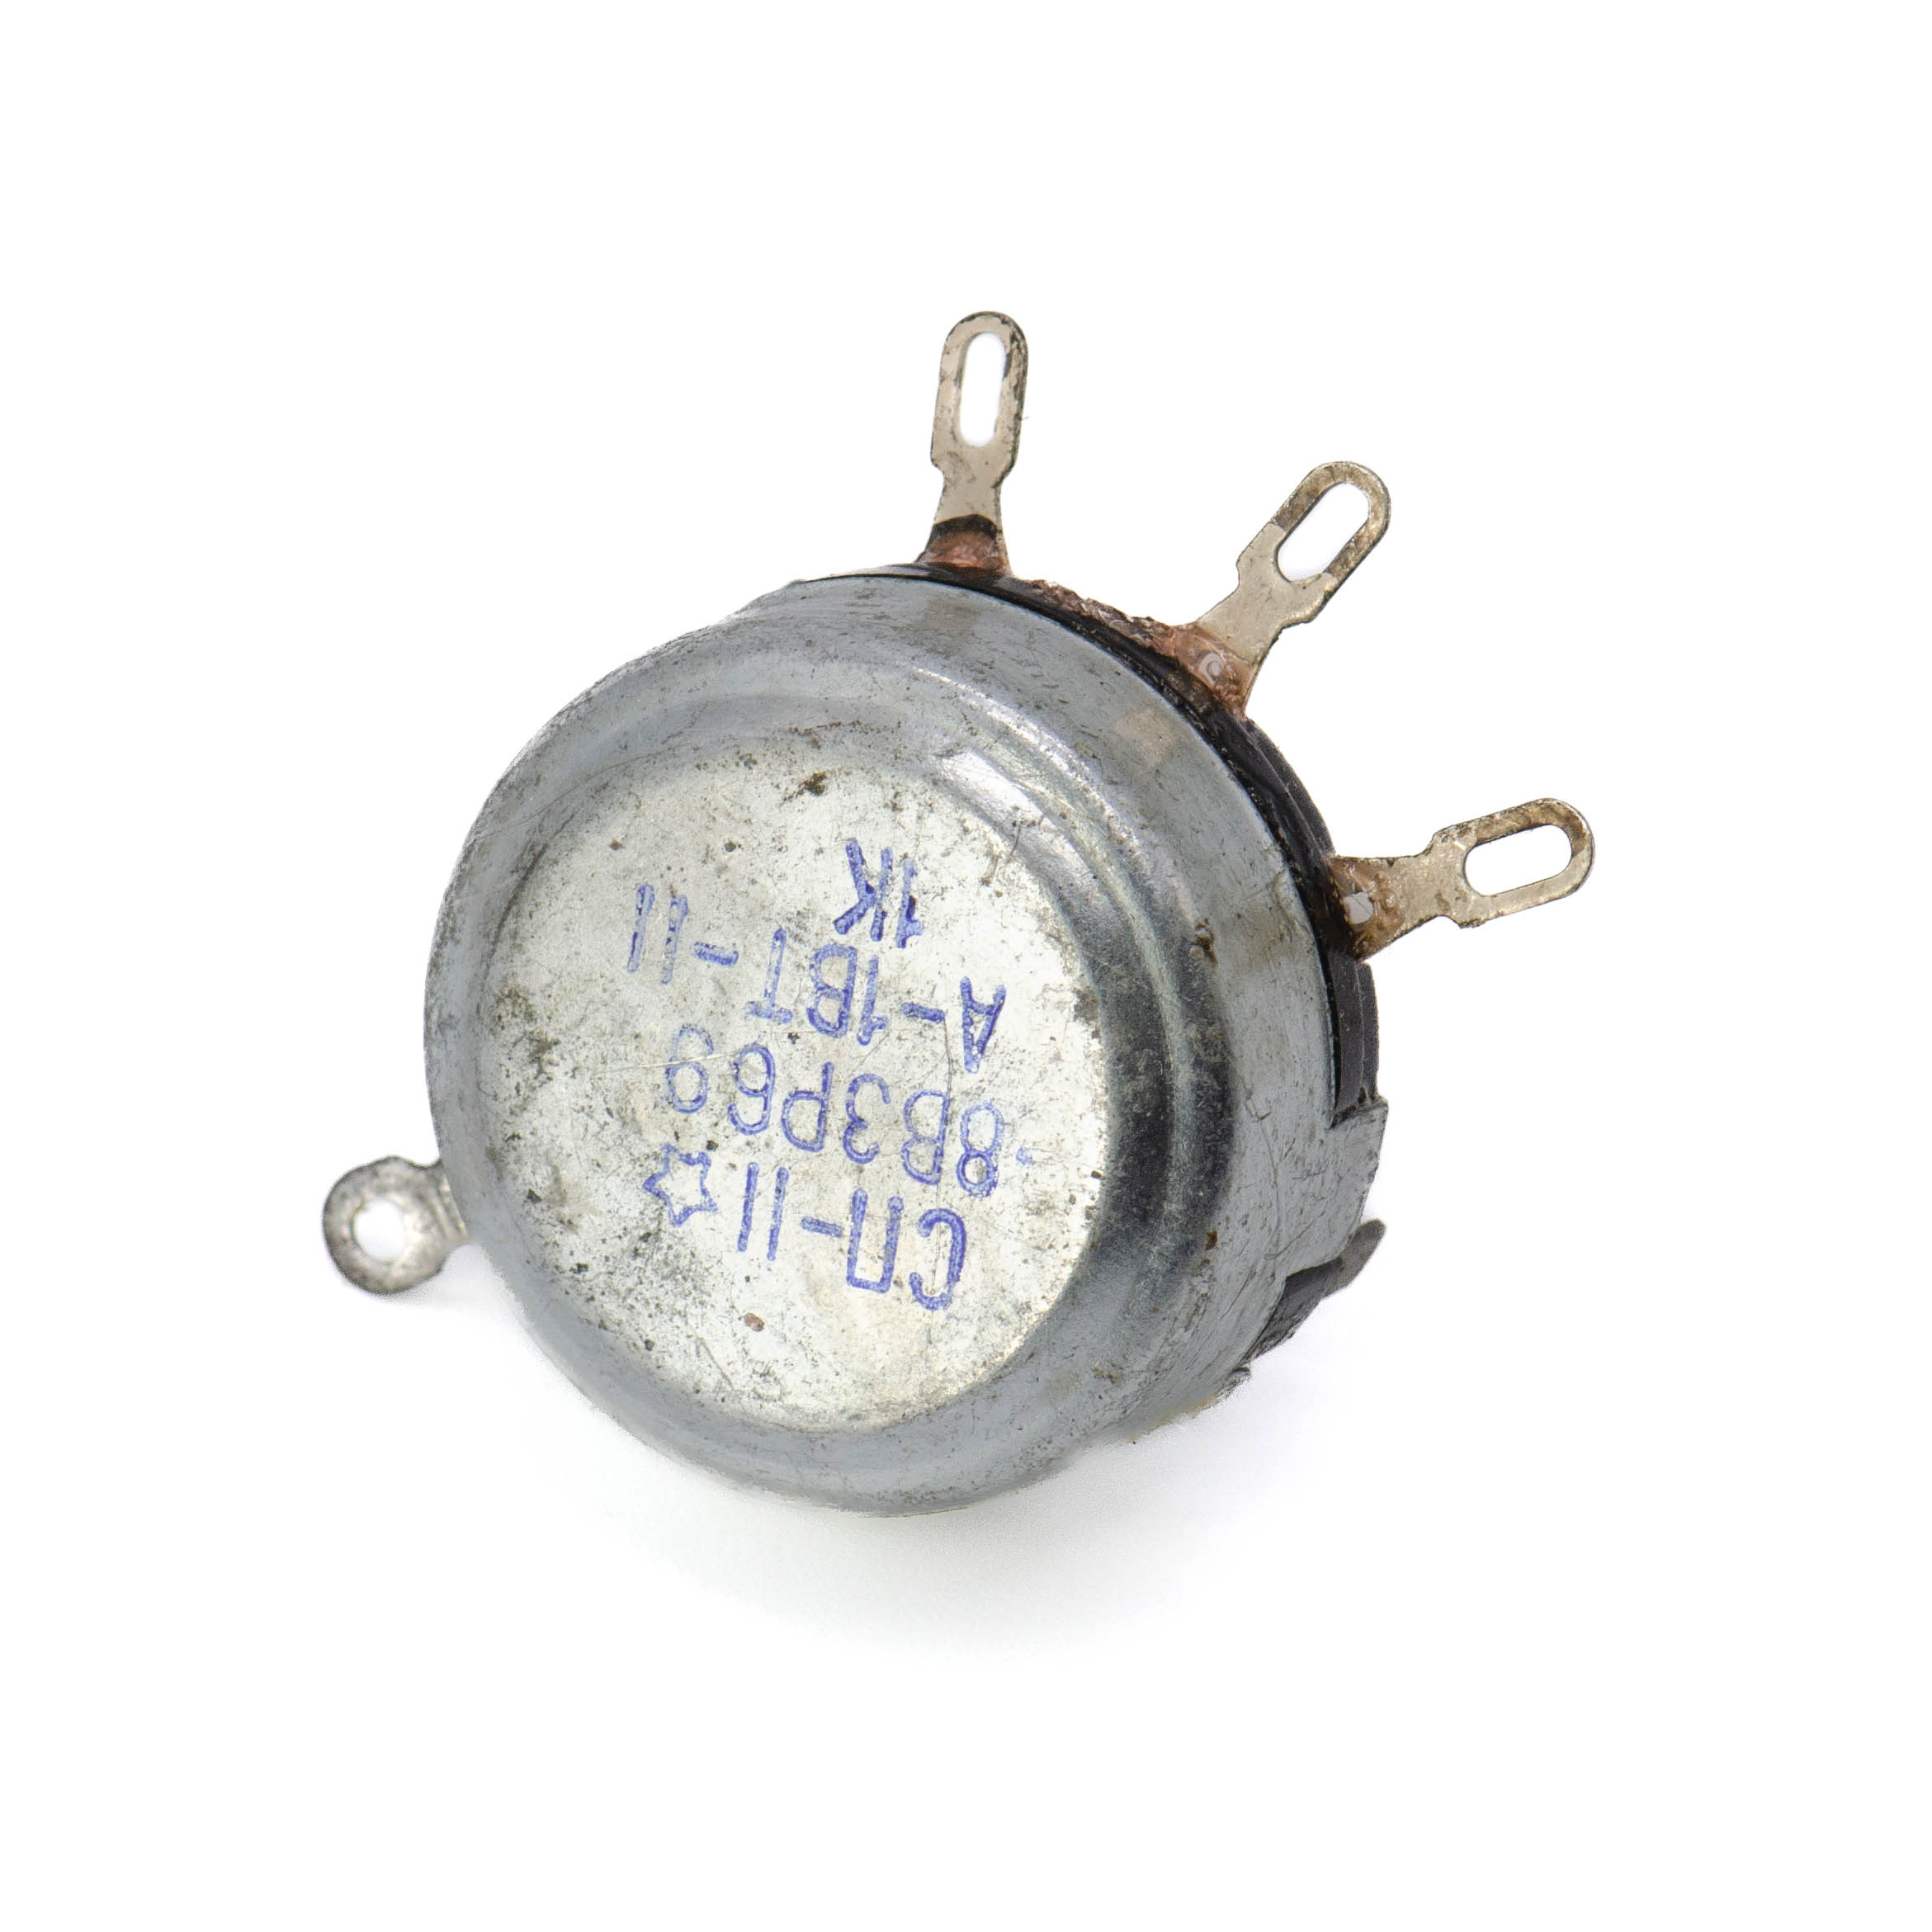 СП-2(II) 1W(Ватт) 1kΩ(кОм)-А, ВС2-16 сплошной с шлицем Резистор переменный (потенциометр), фото